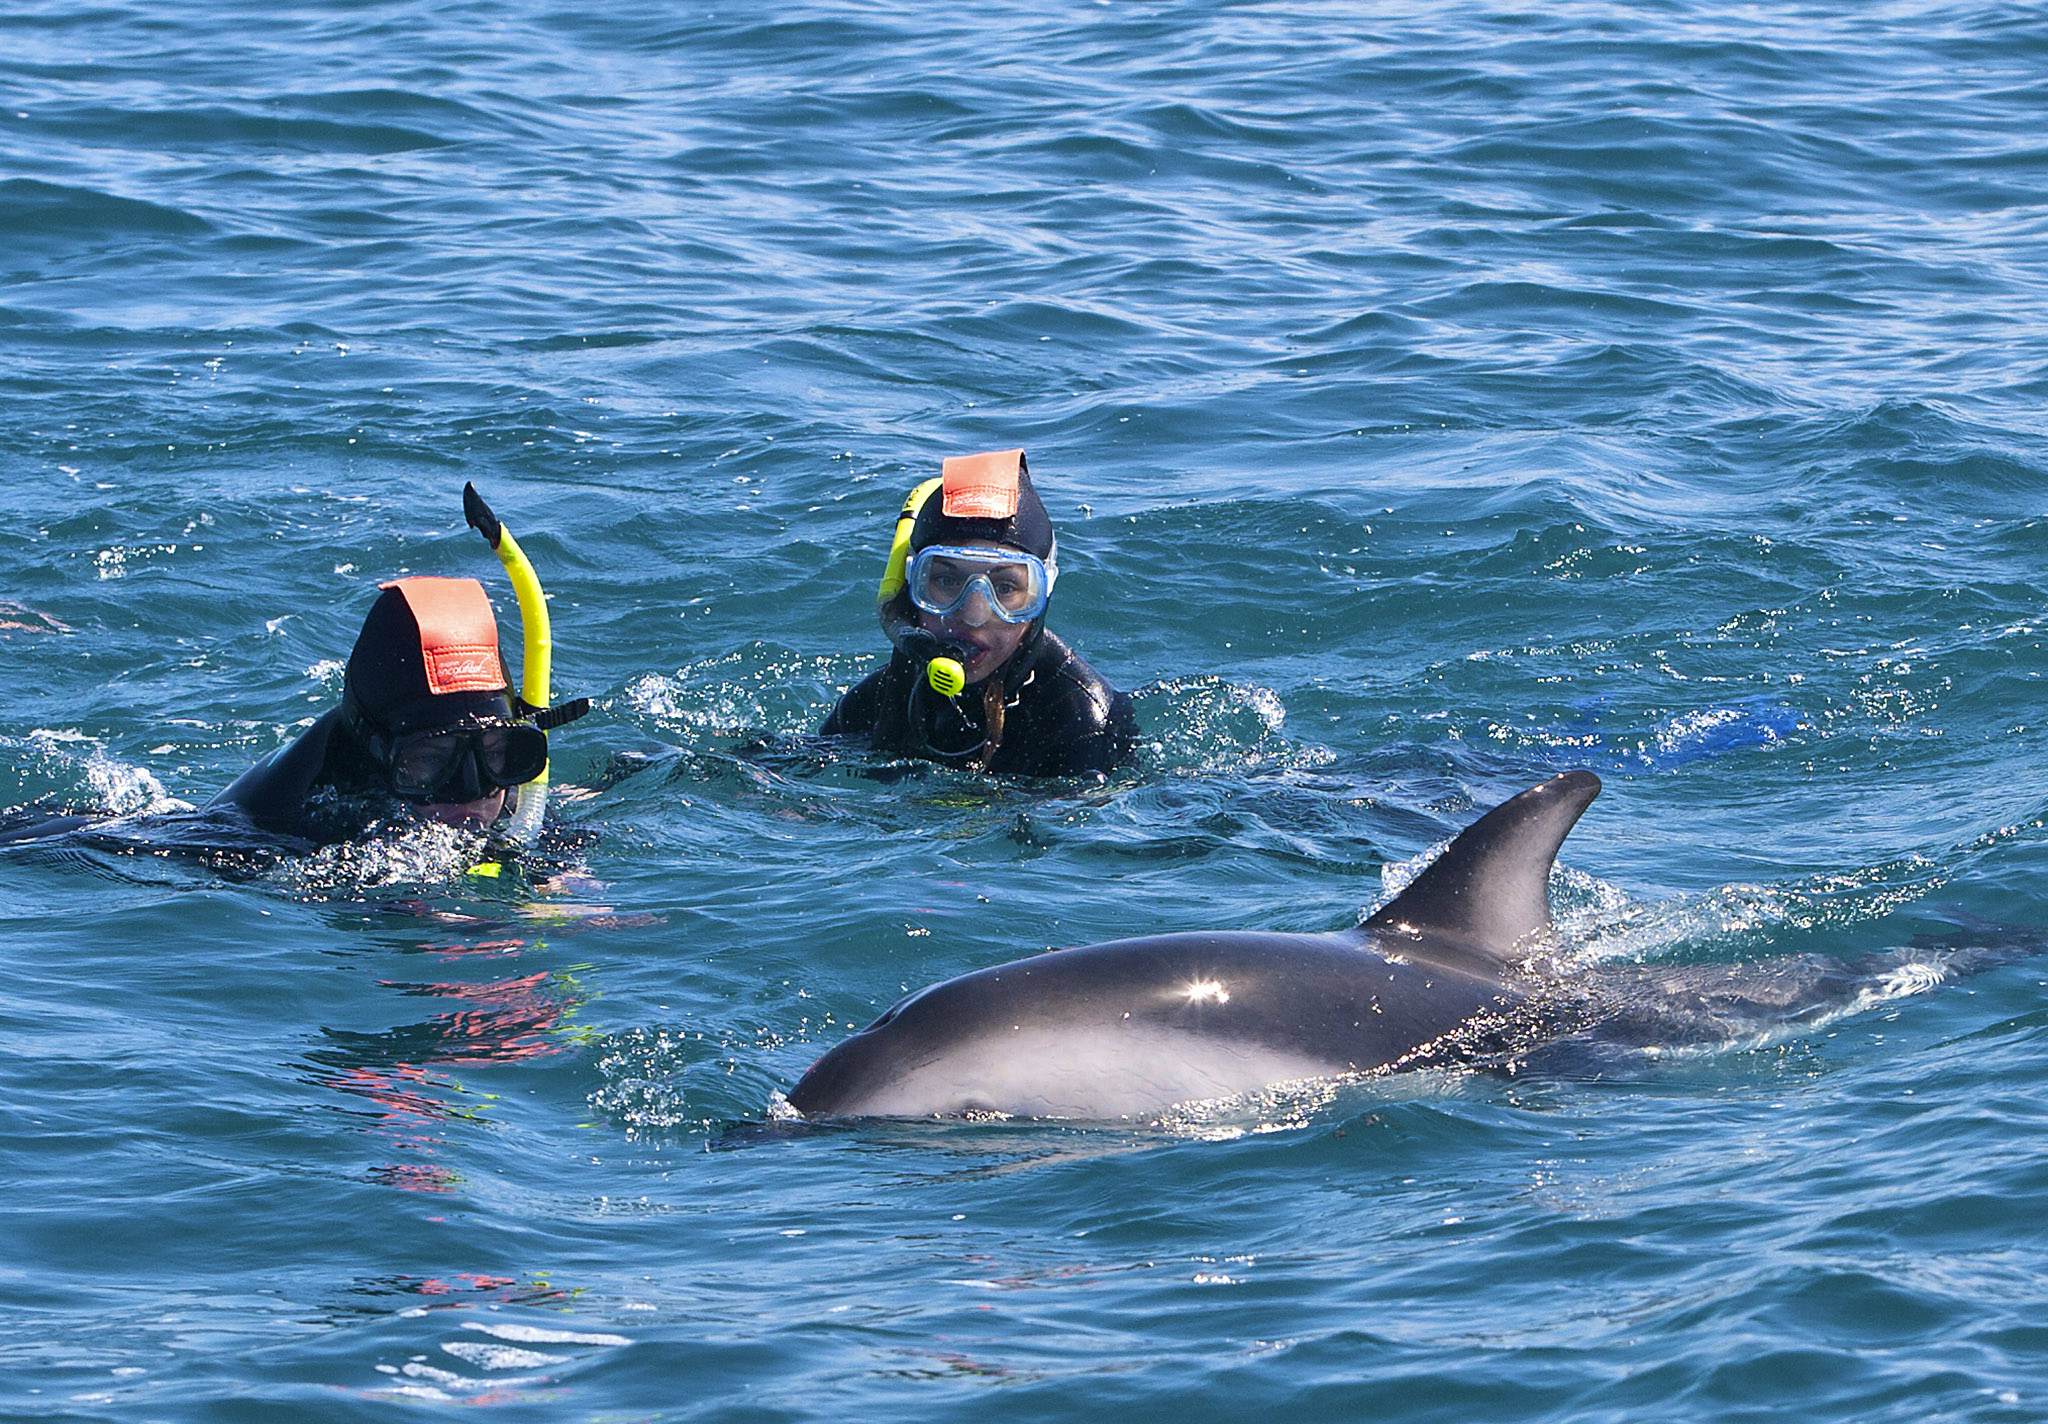  kaikoura swim with dolphins